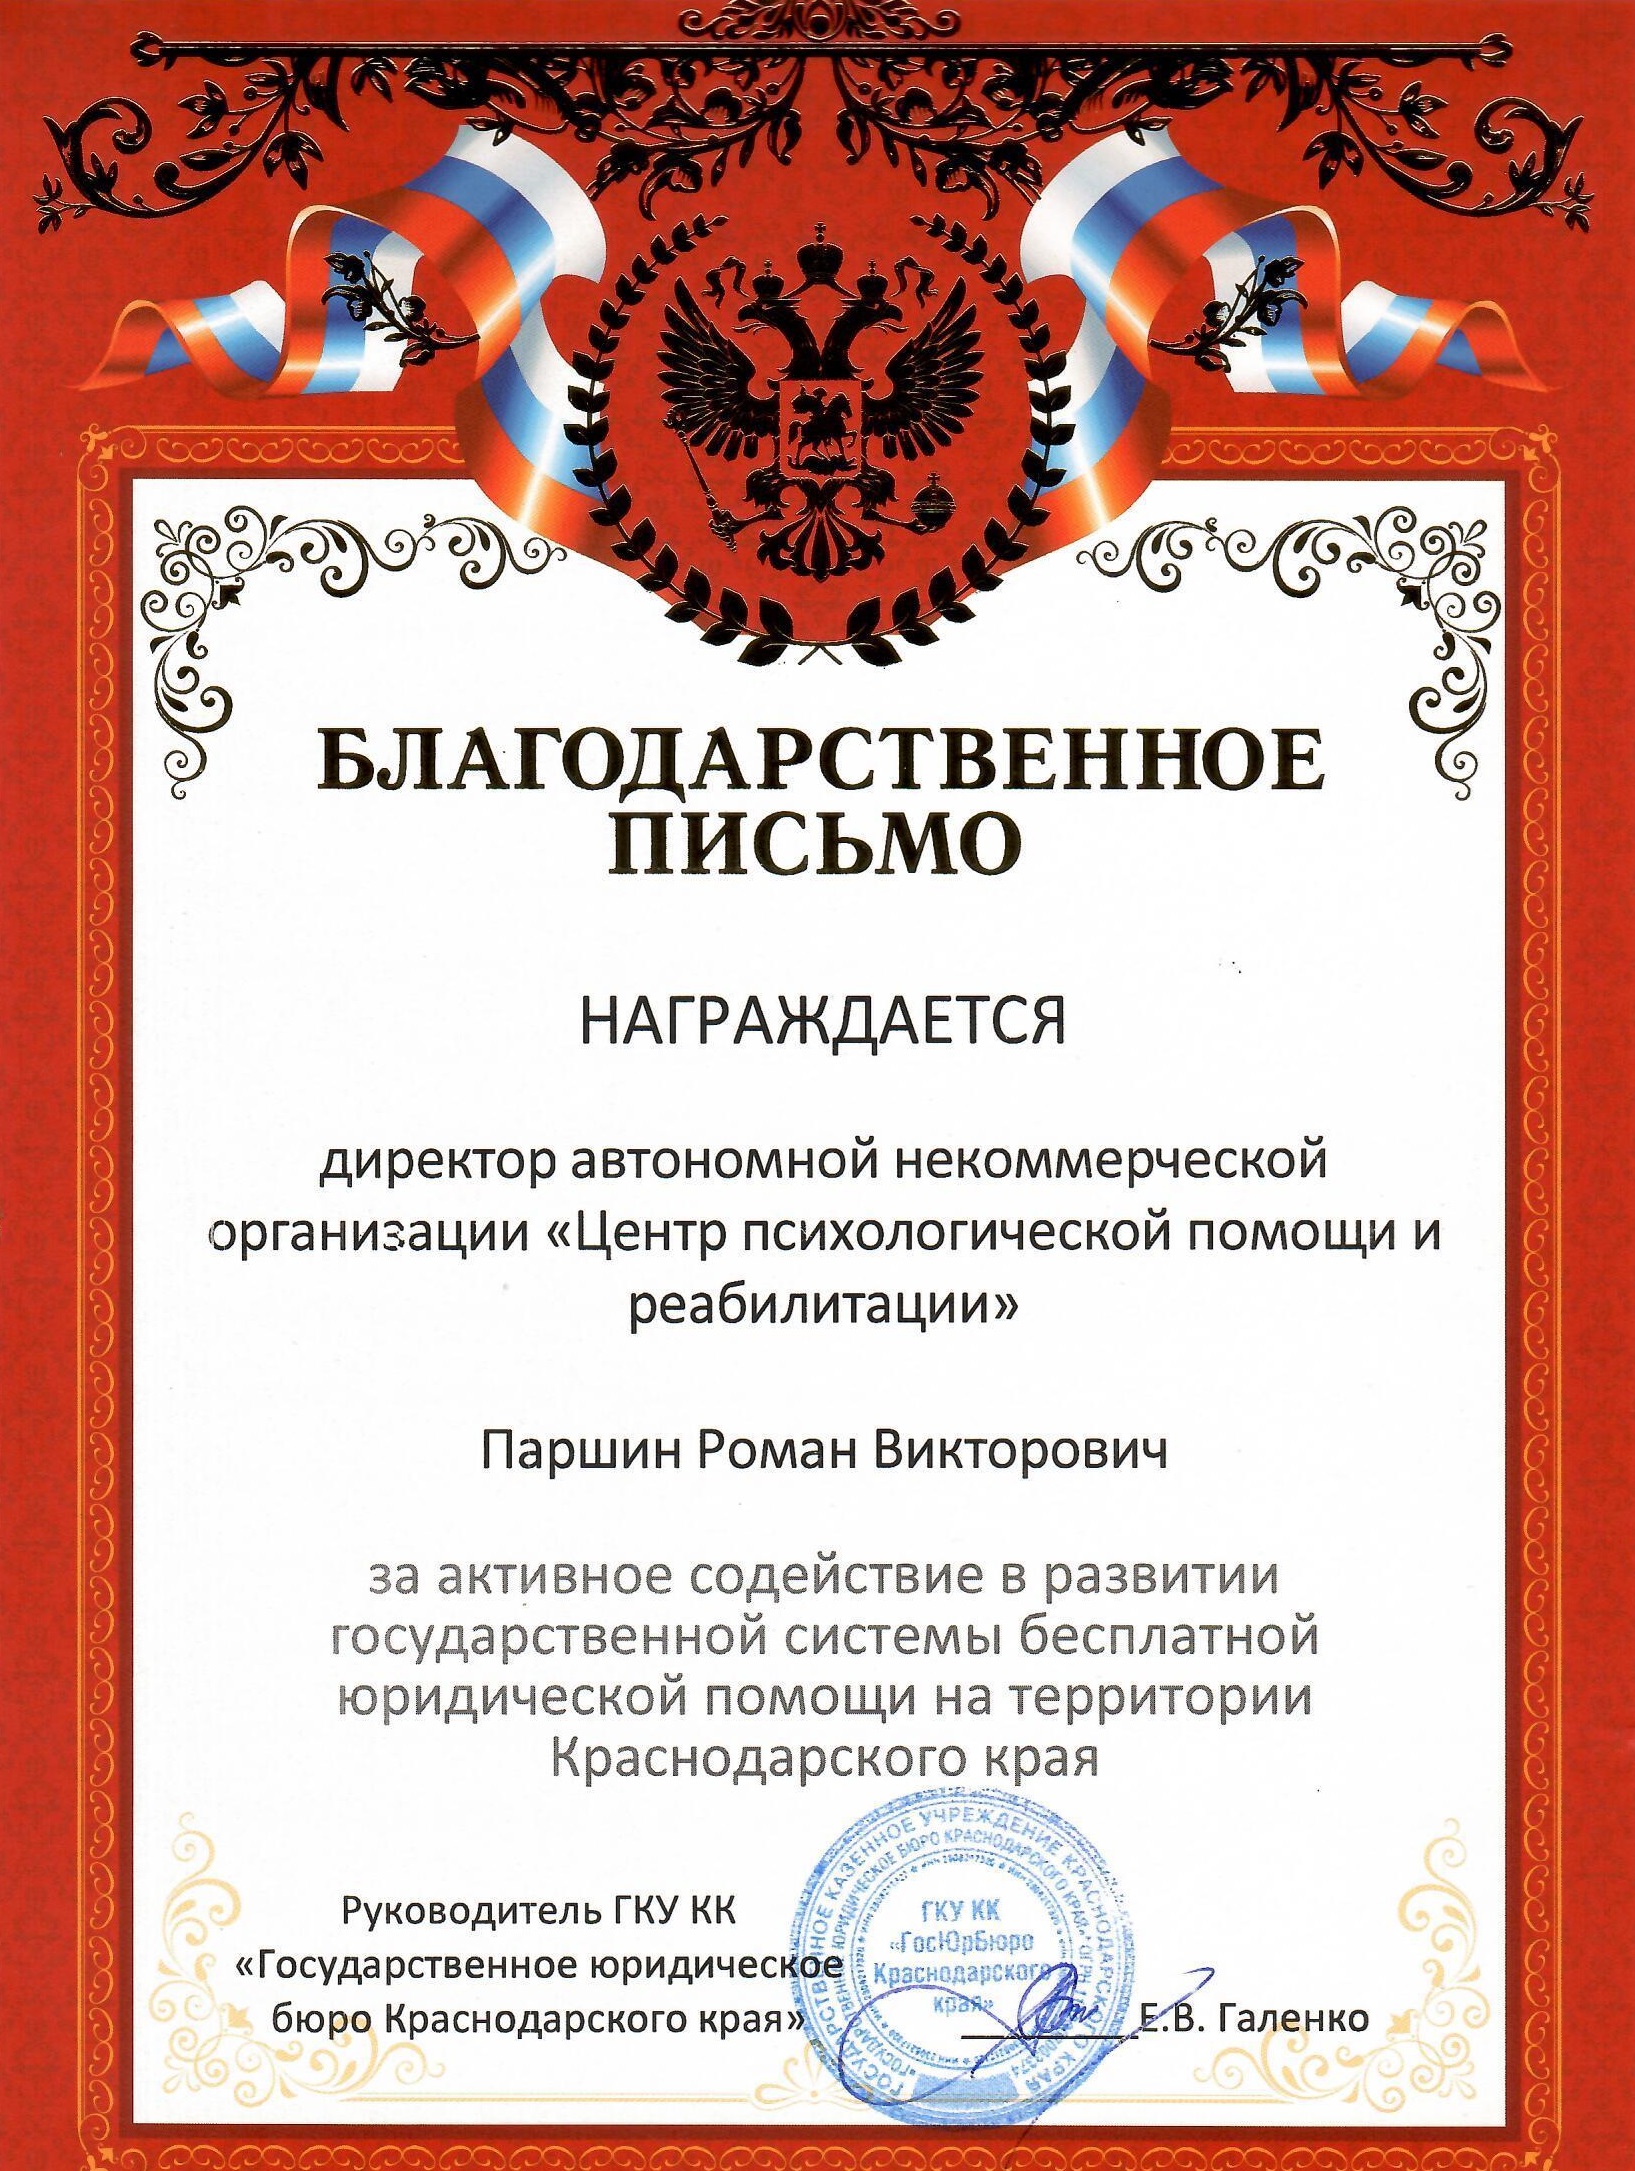 <p>Благодарность Государственного юридического бюро Краснодарского края</p>
